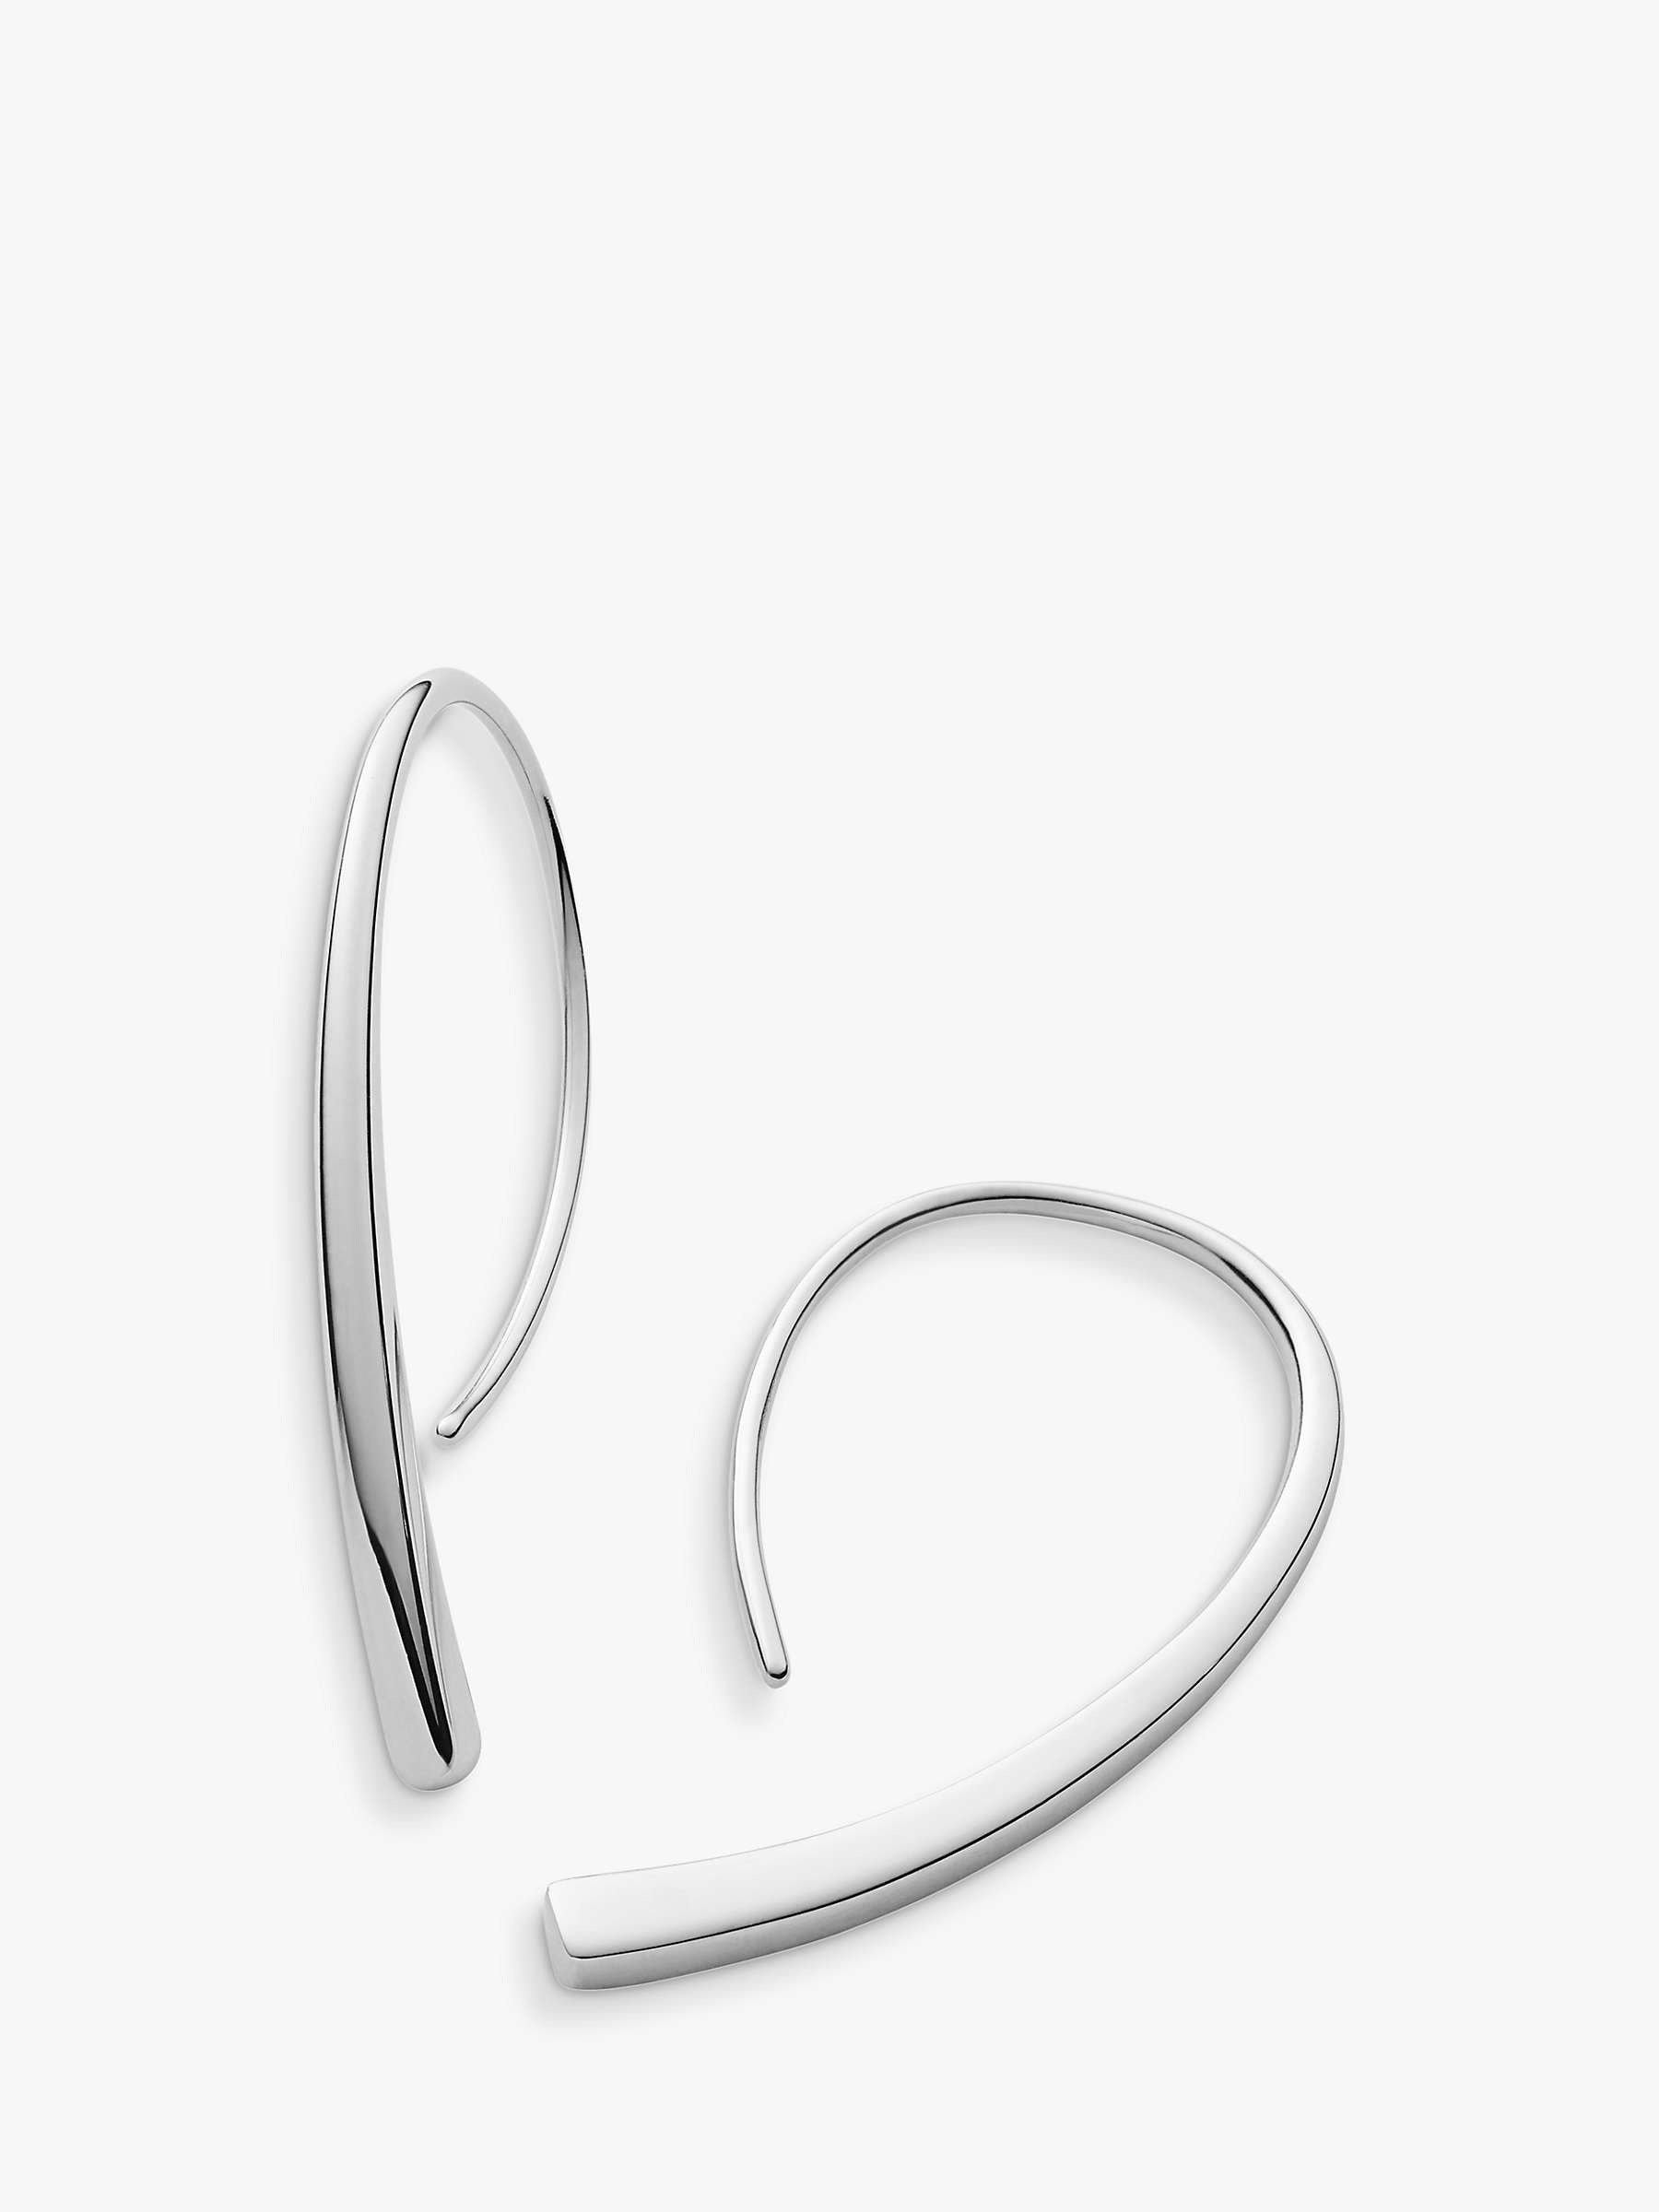 Buy Skagen Curved Hoop Earrings, Silver Online at johnlewis.com